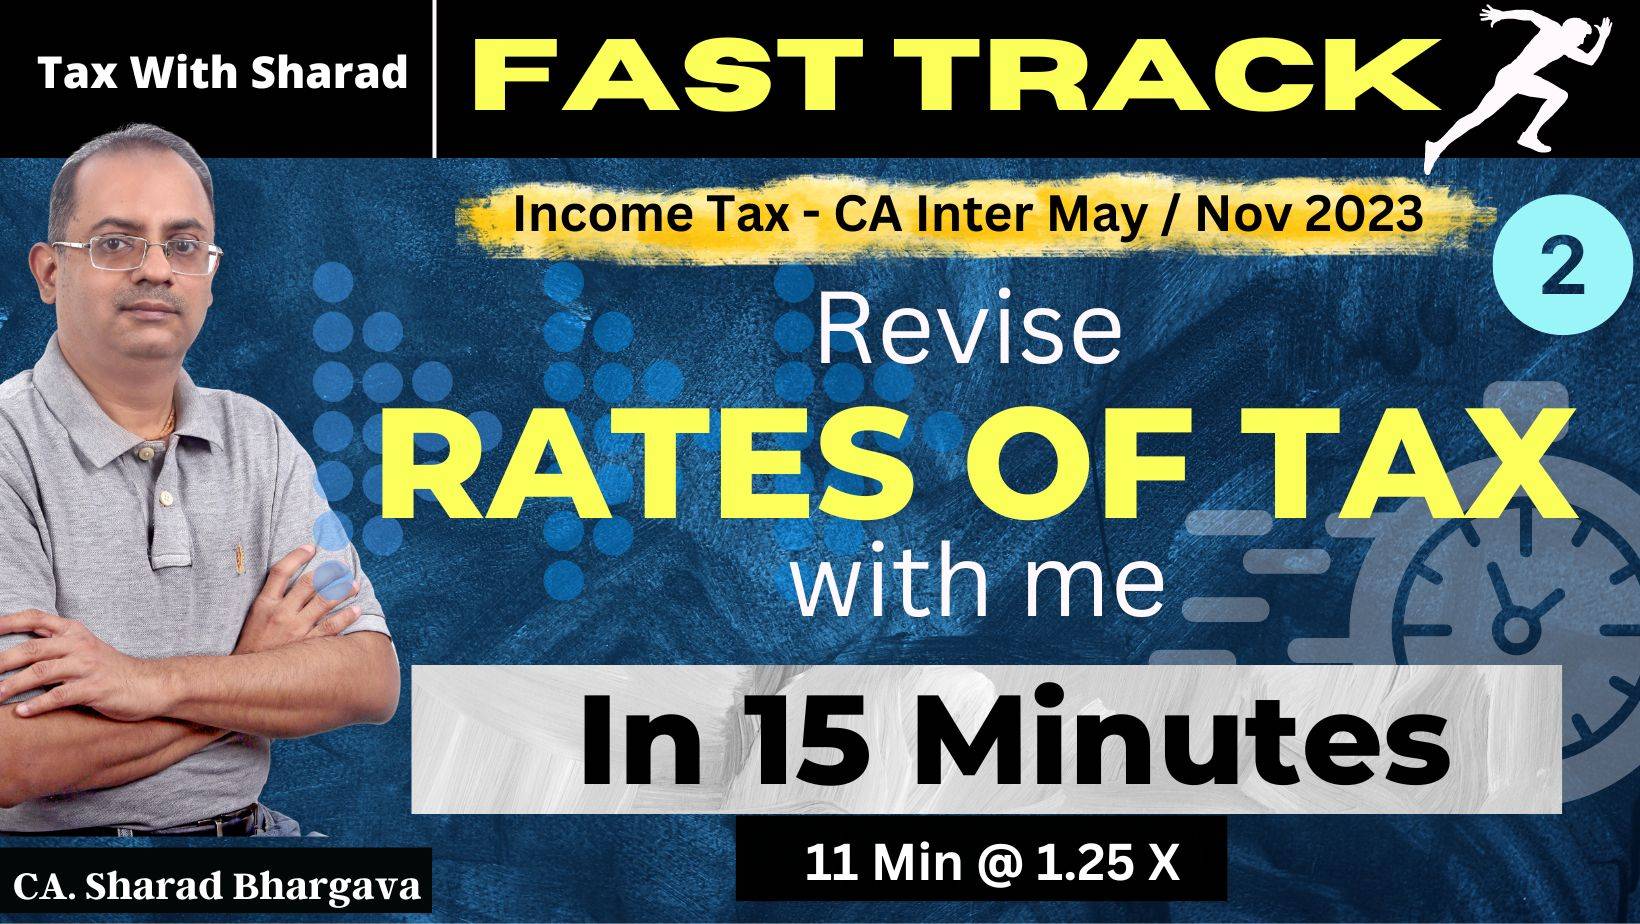 Fast Track Revision (DT) / 2 - Rates of Tax / CA Inter May/ Nov 2023 / CA. Sharad Bhargava